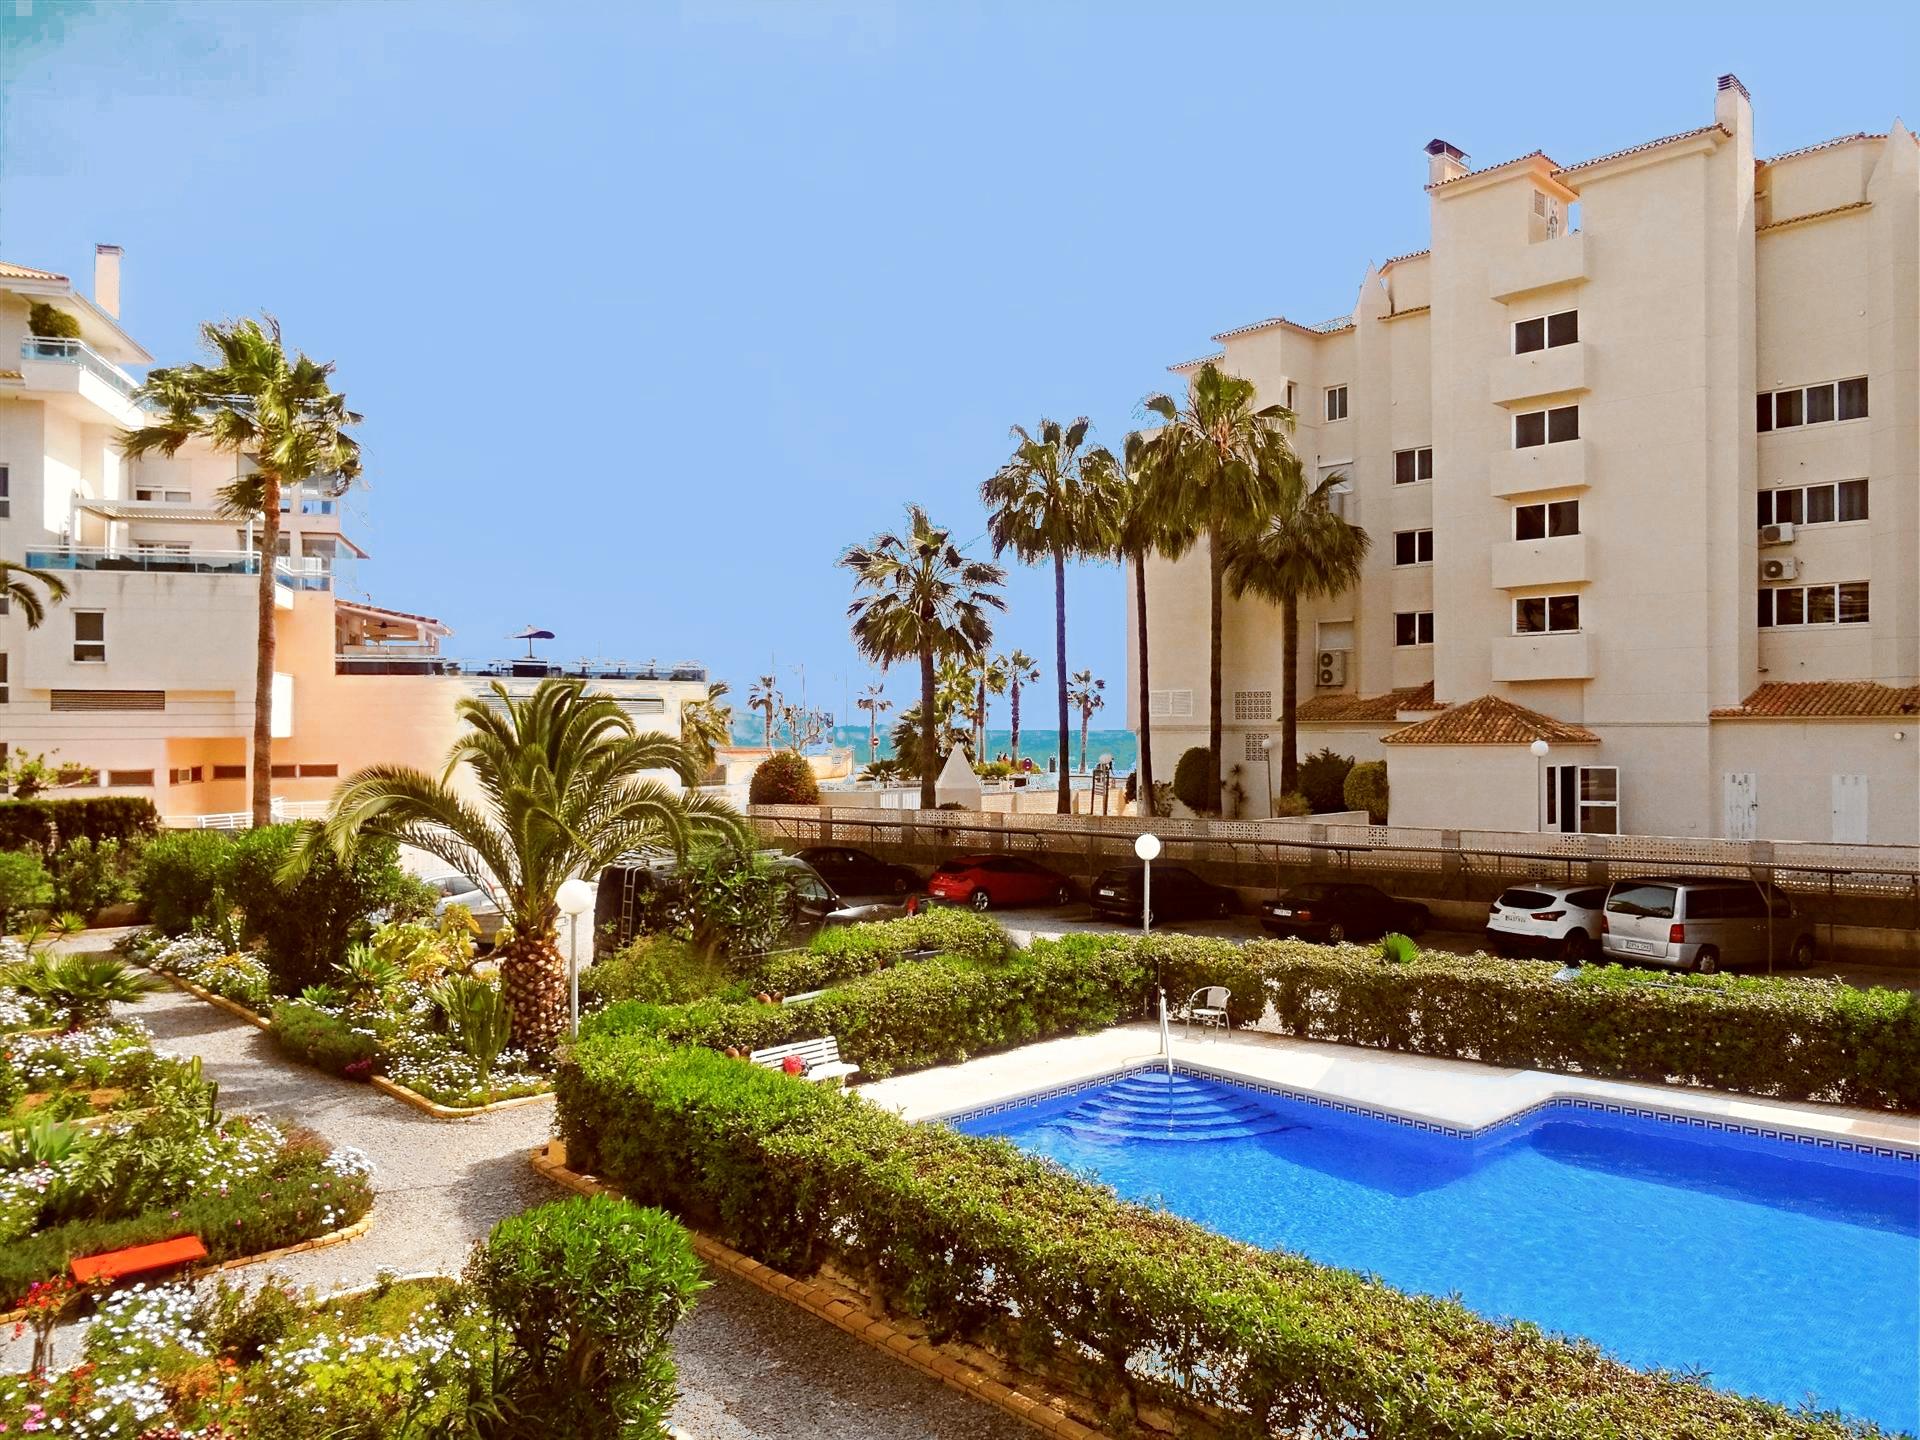 Casa mediterráneo albir, Modern en comfortabel appartement in Albir, Costa Blanca, Spanje voor 5 personen...